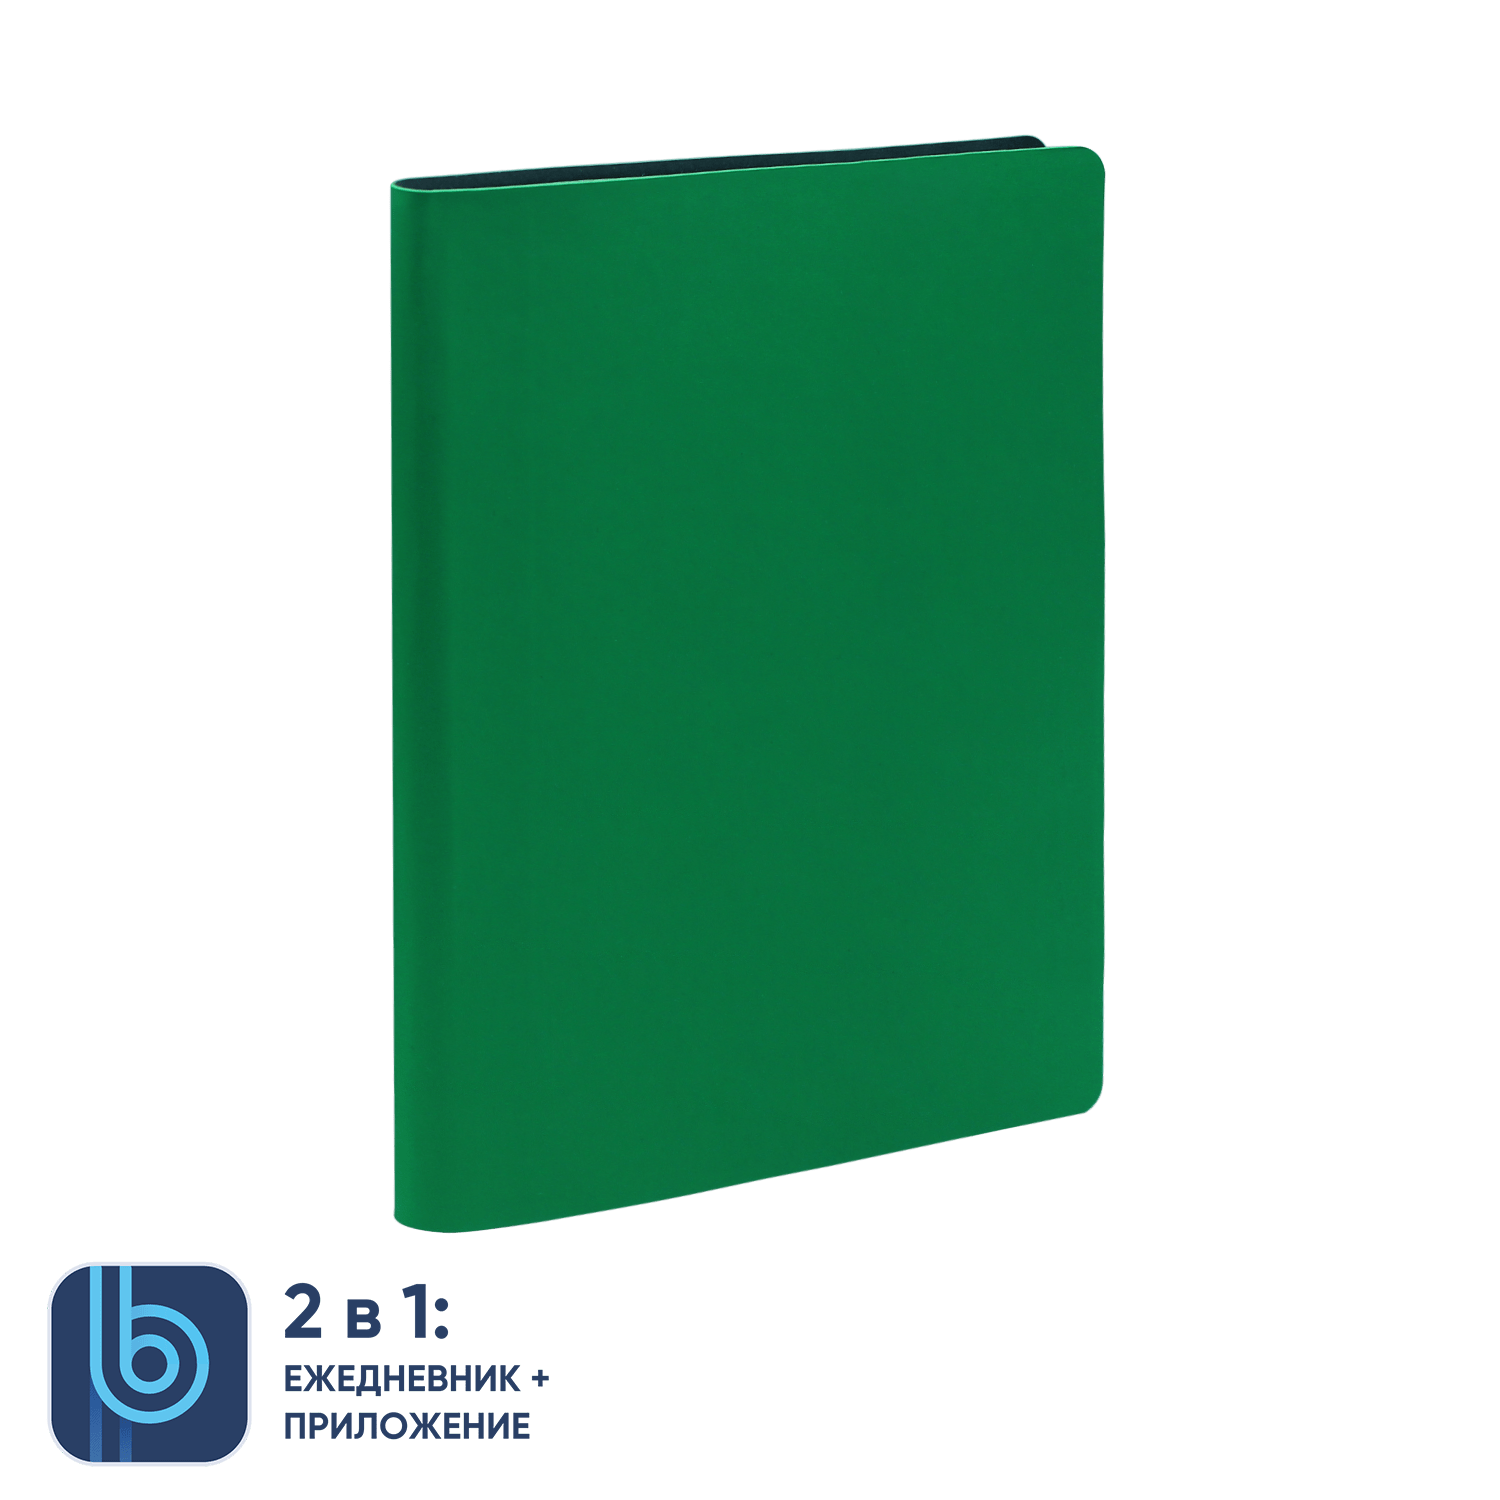 Ежедневник Bplanner.01 green (зеленый), зеленый, картон